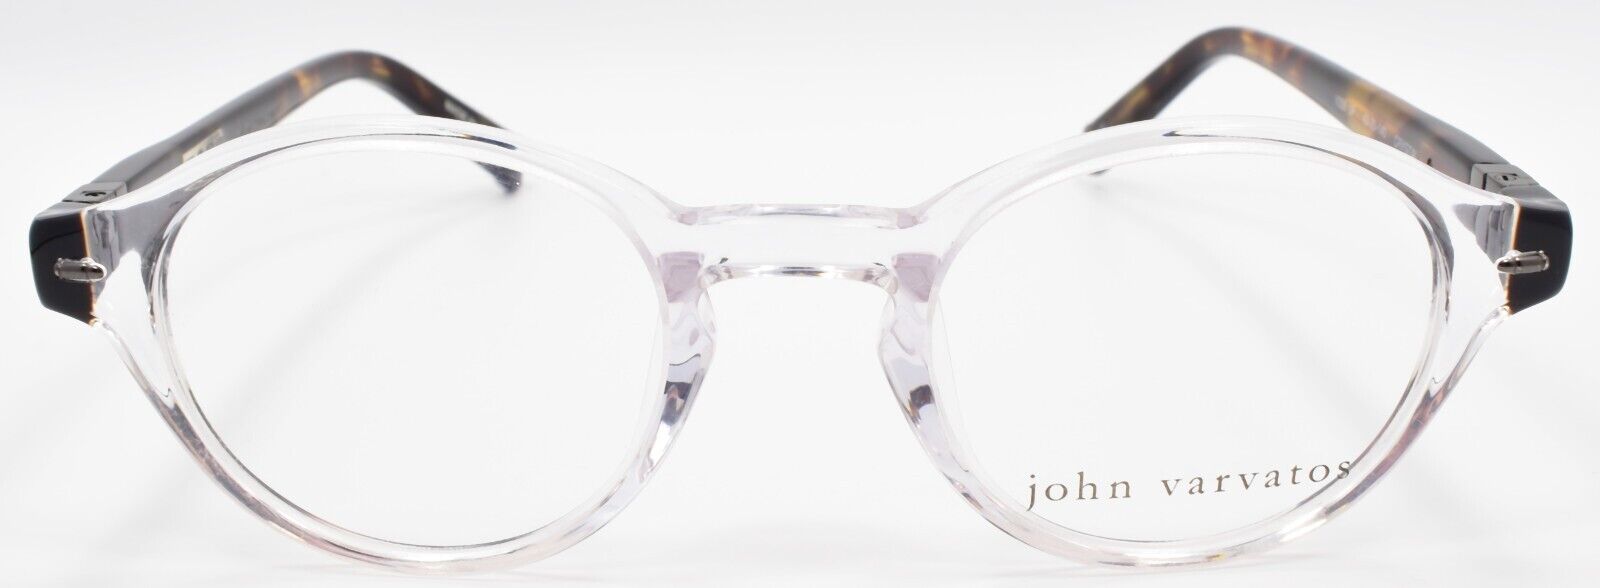 2-John Varvatos V356 UF Eyeglasses Frames Small 43-20-140 Crystal Japan-751286253894-IKSpecs